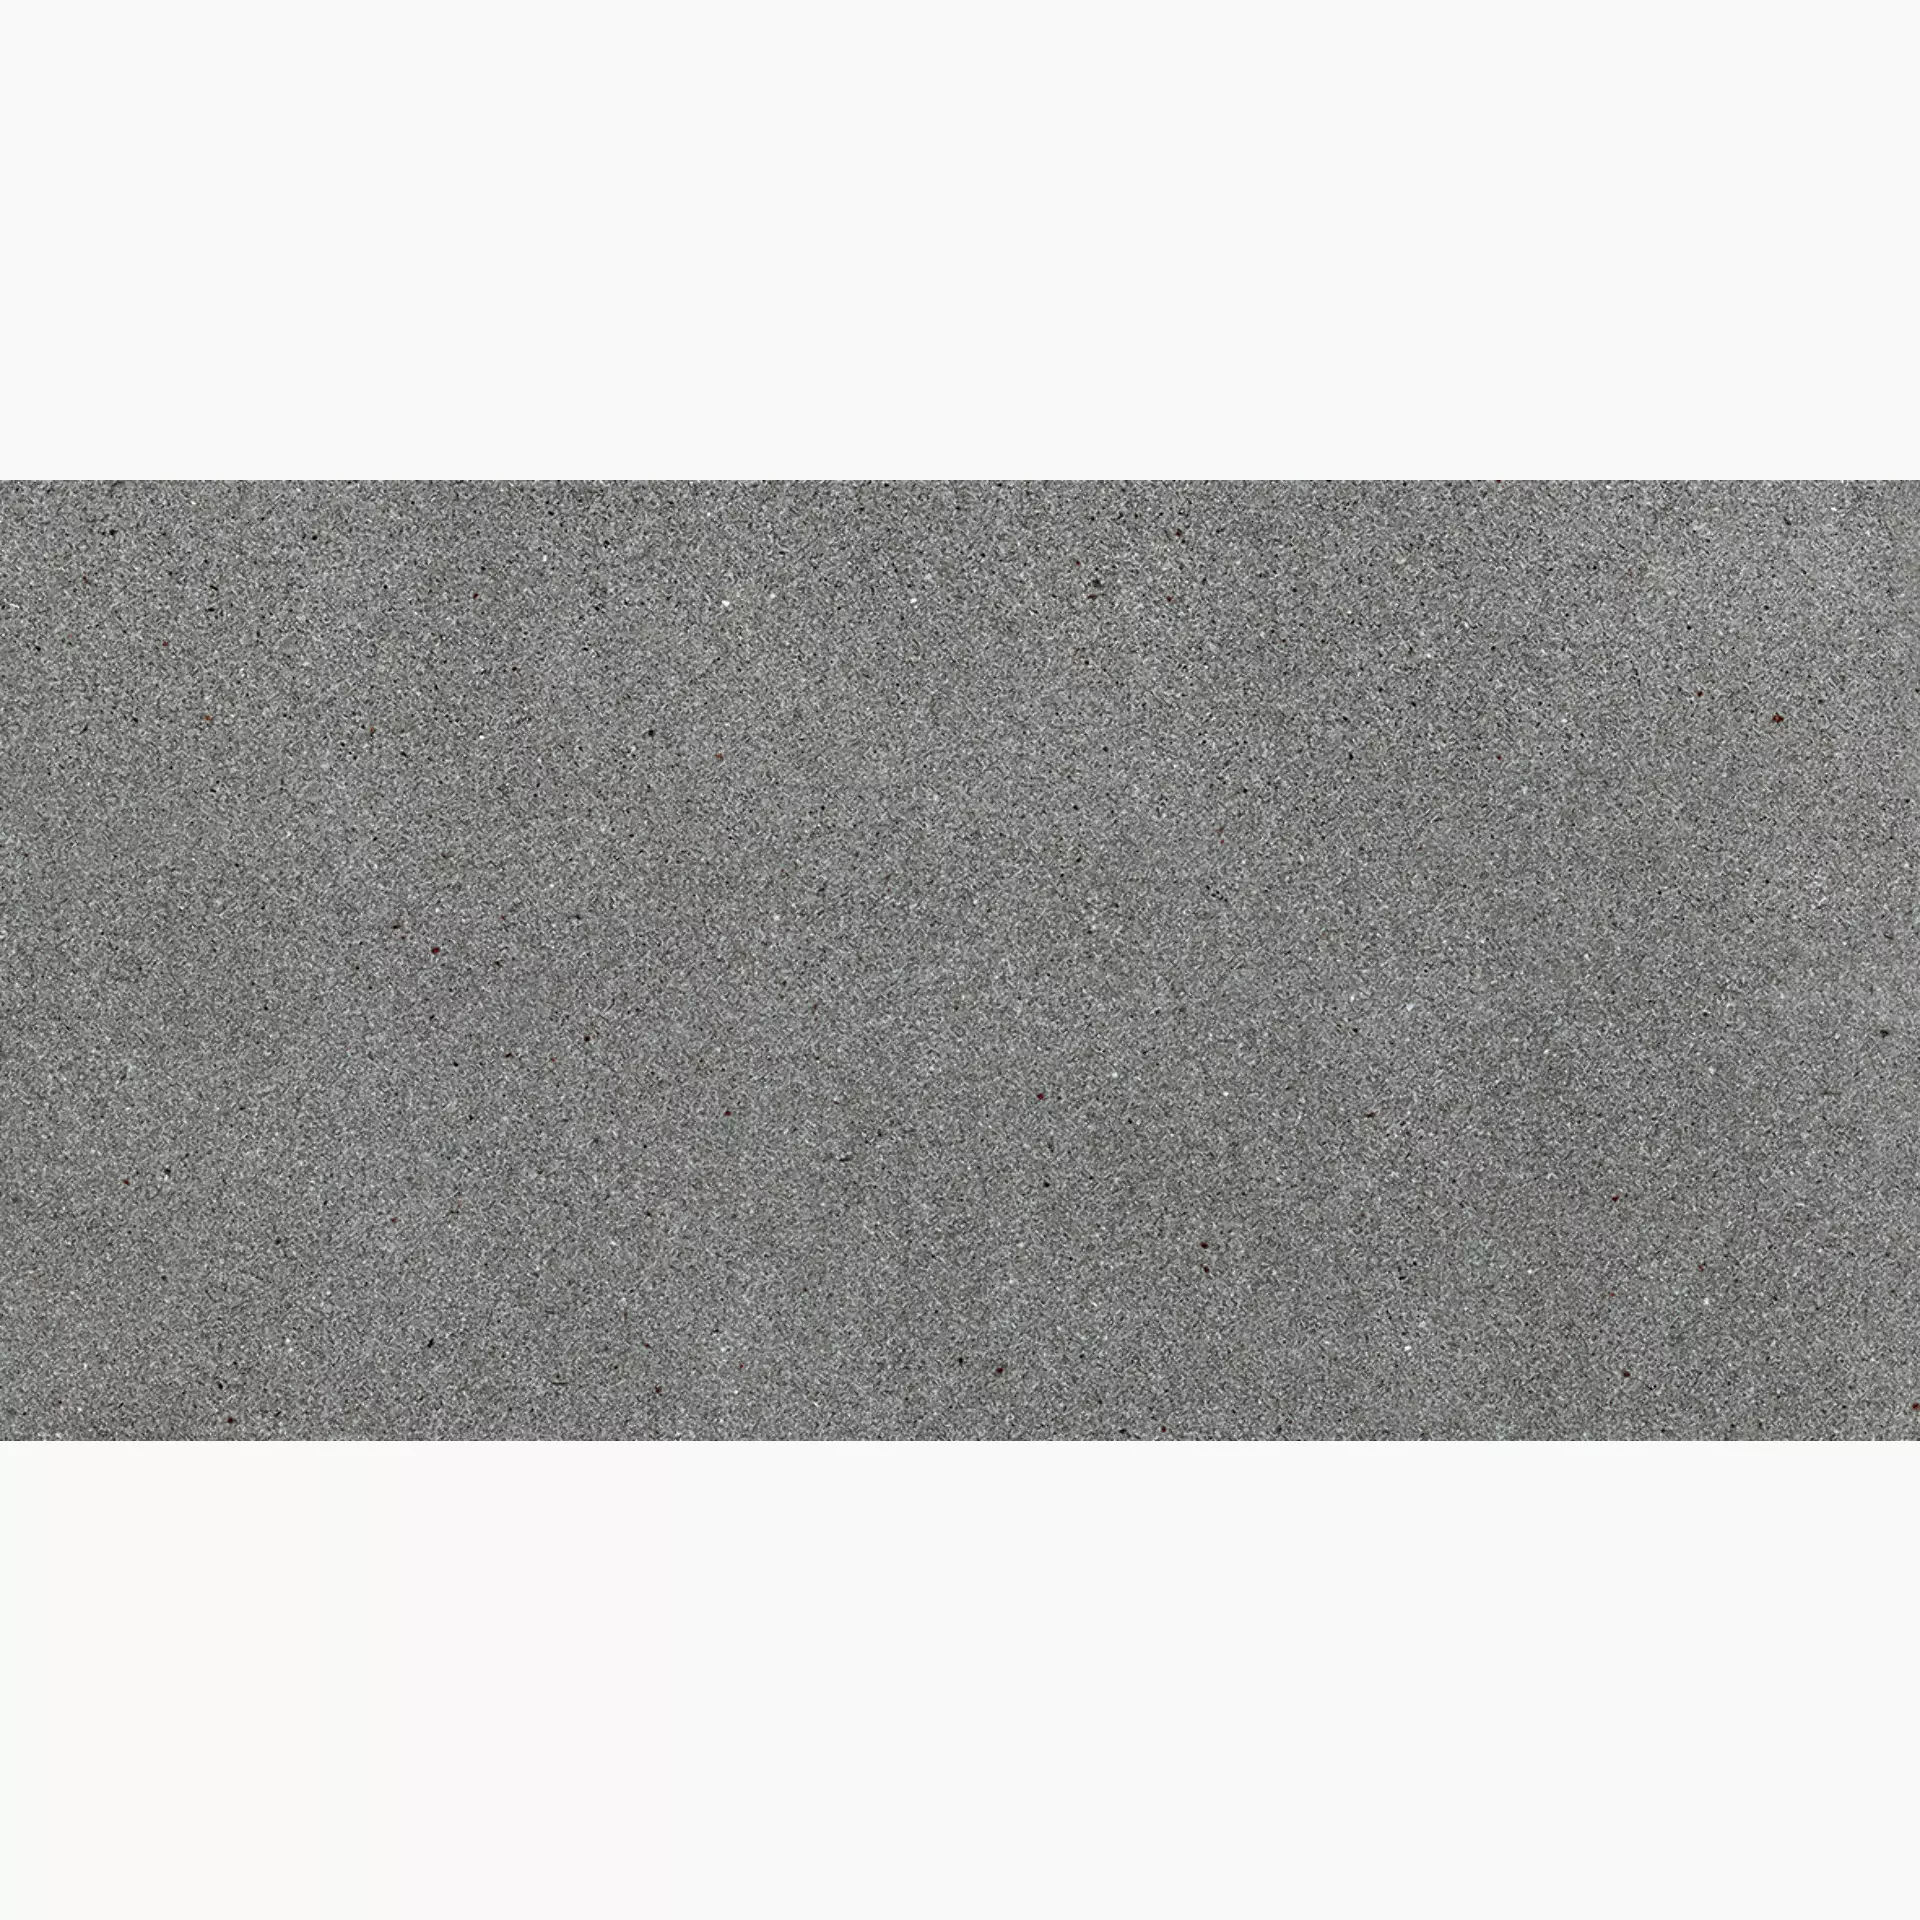 Florim Airtech New York Light Grey Naturale – Matt 760240 30x60cm rectified 9mm